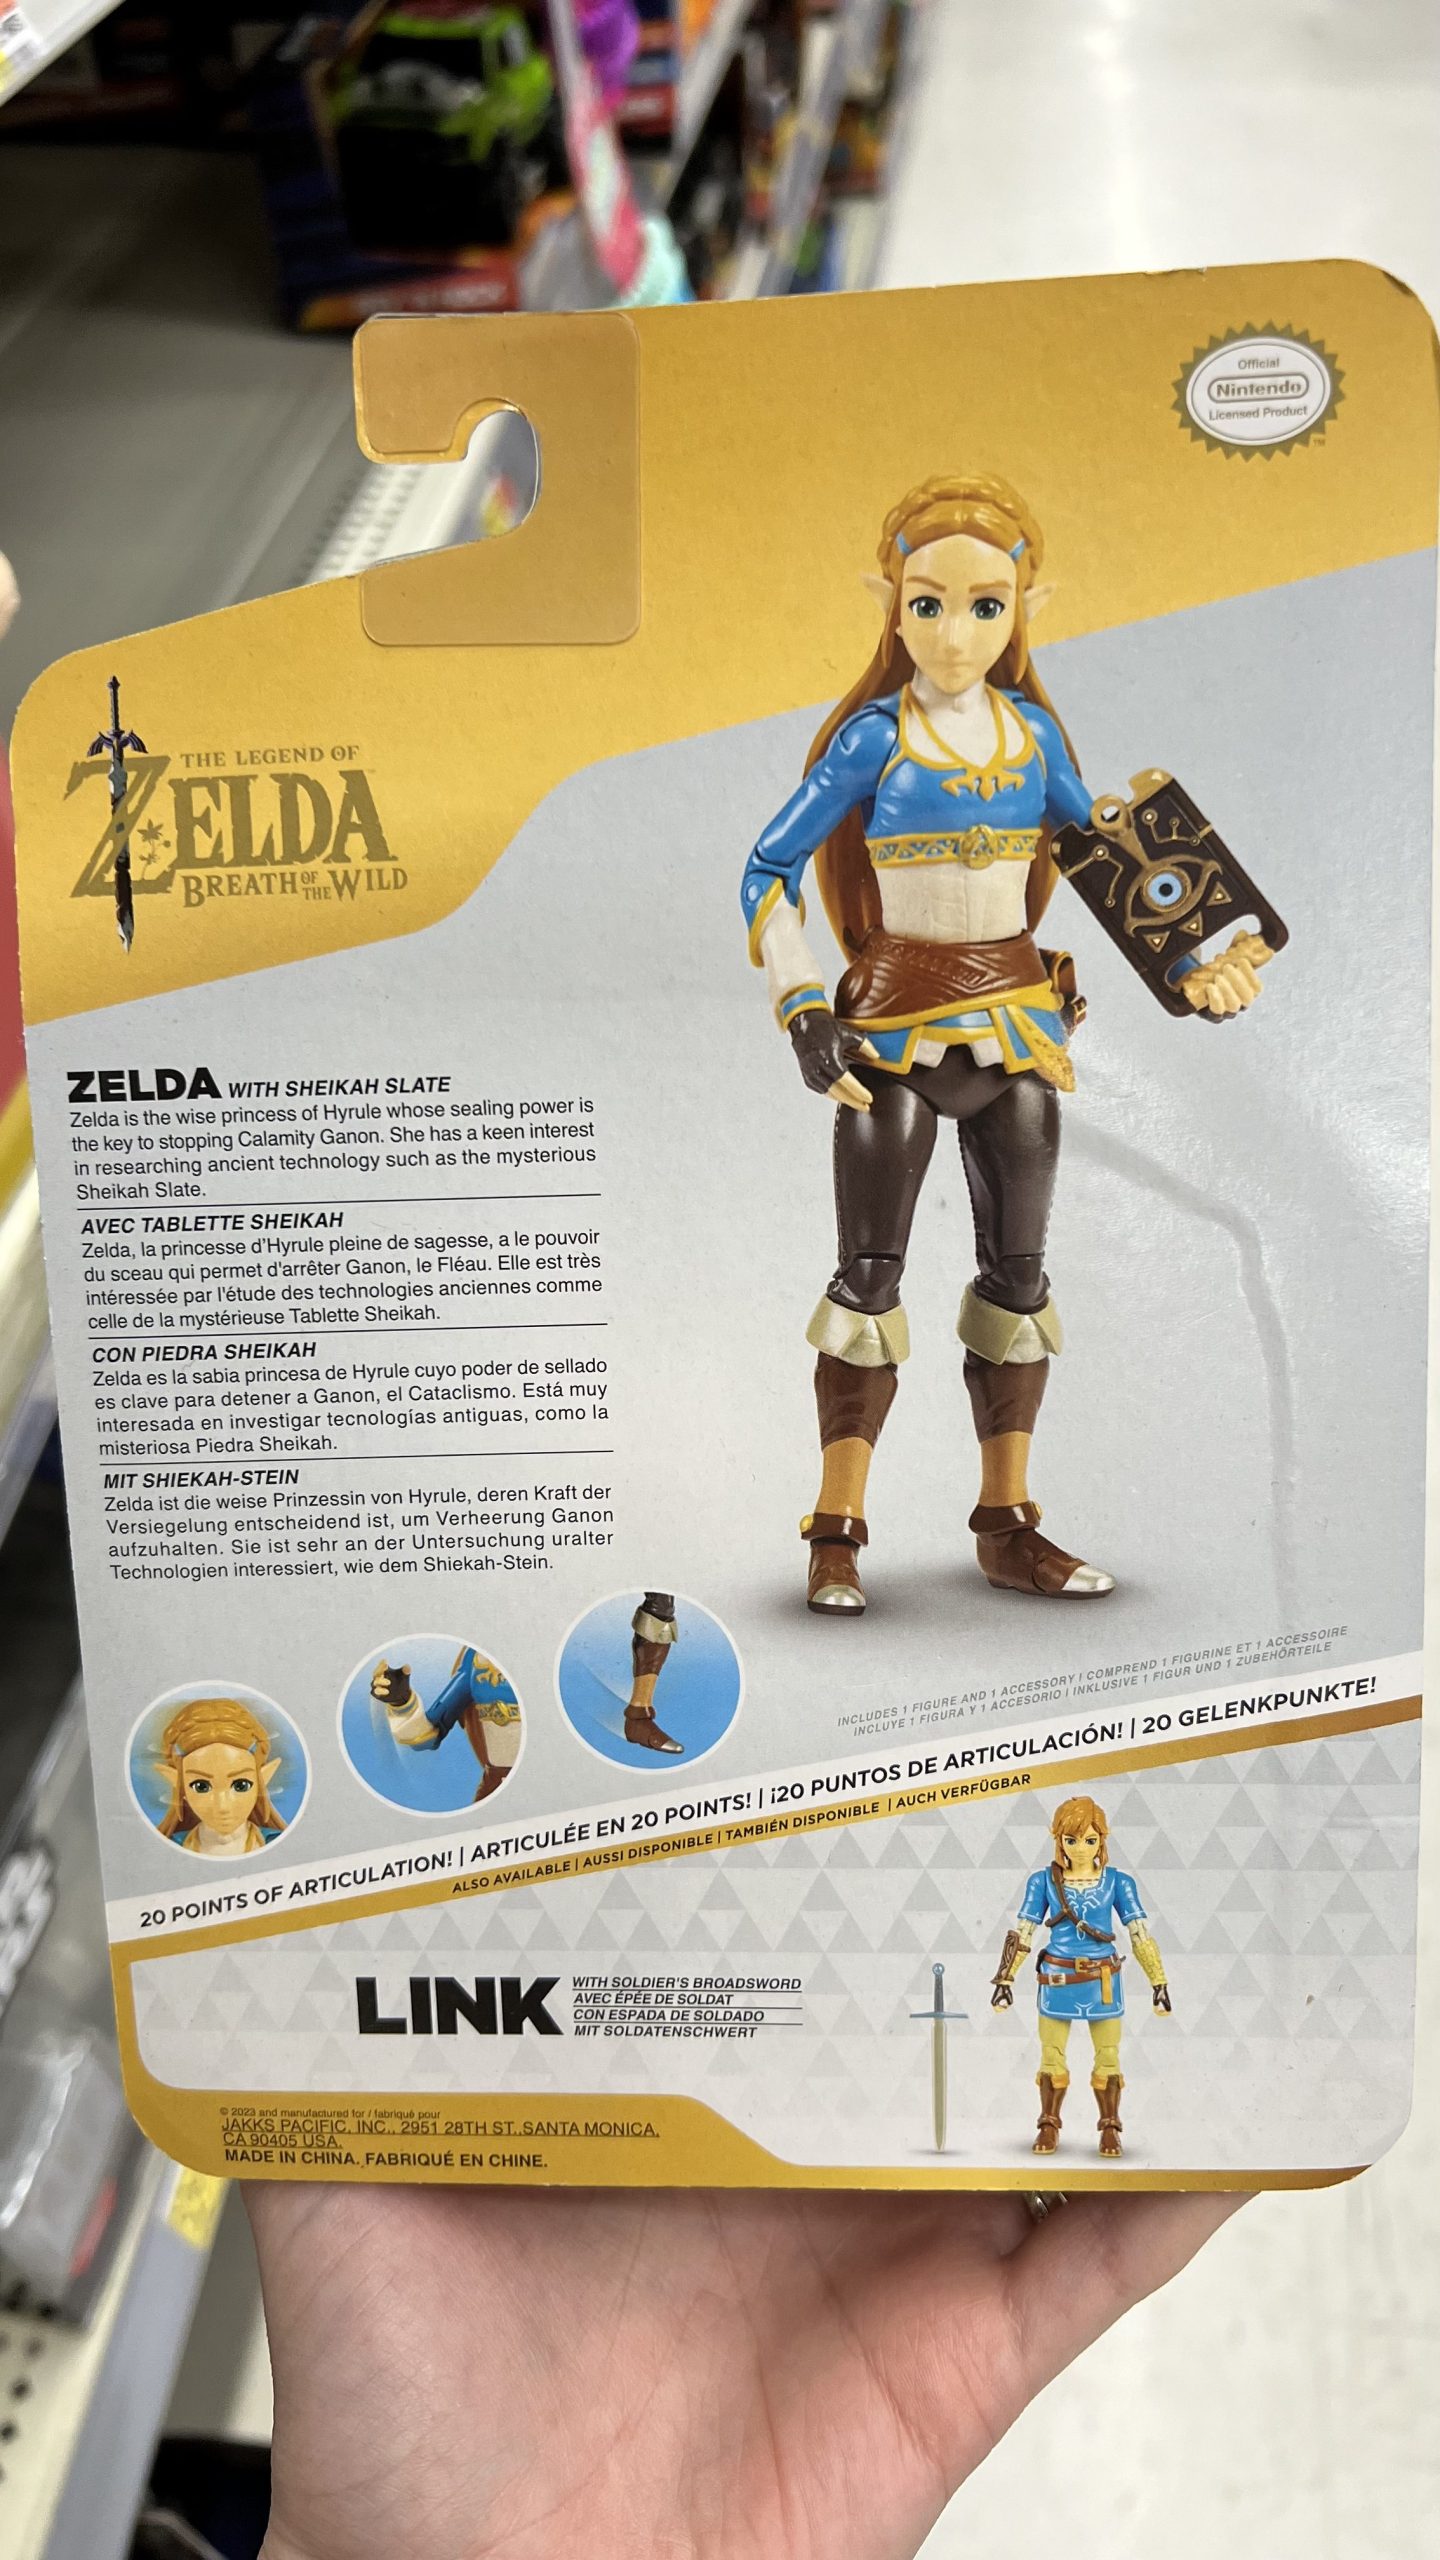 World of Nintendo Legend of Zelda Link & Zelda Action Figure Botw 2023 - 2  Pack, zelda link 